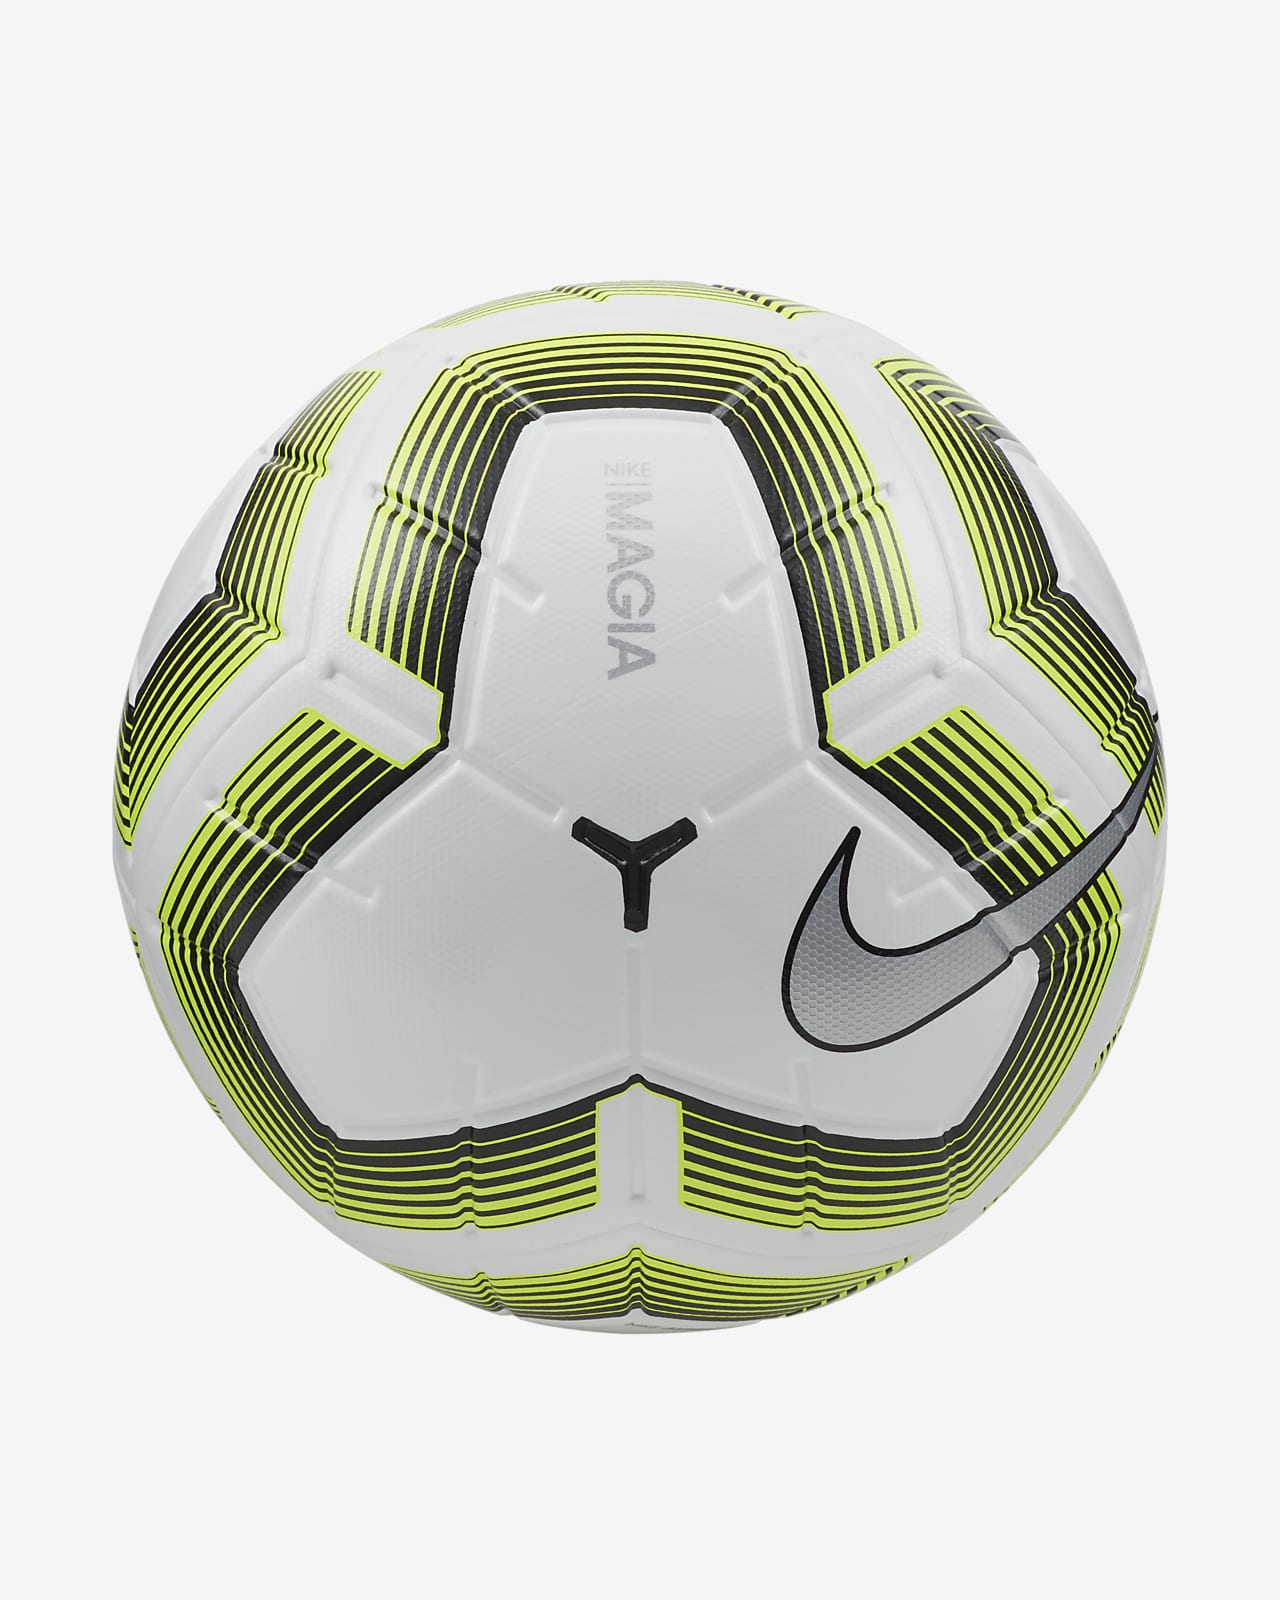 Balón de fútbol Nike NFHS Magia 2. Nike.com